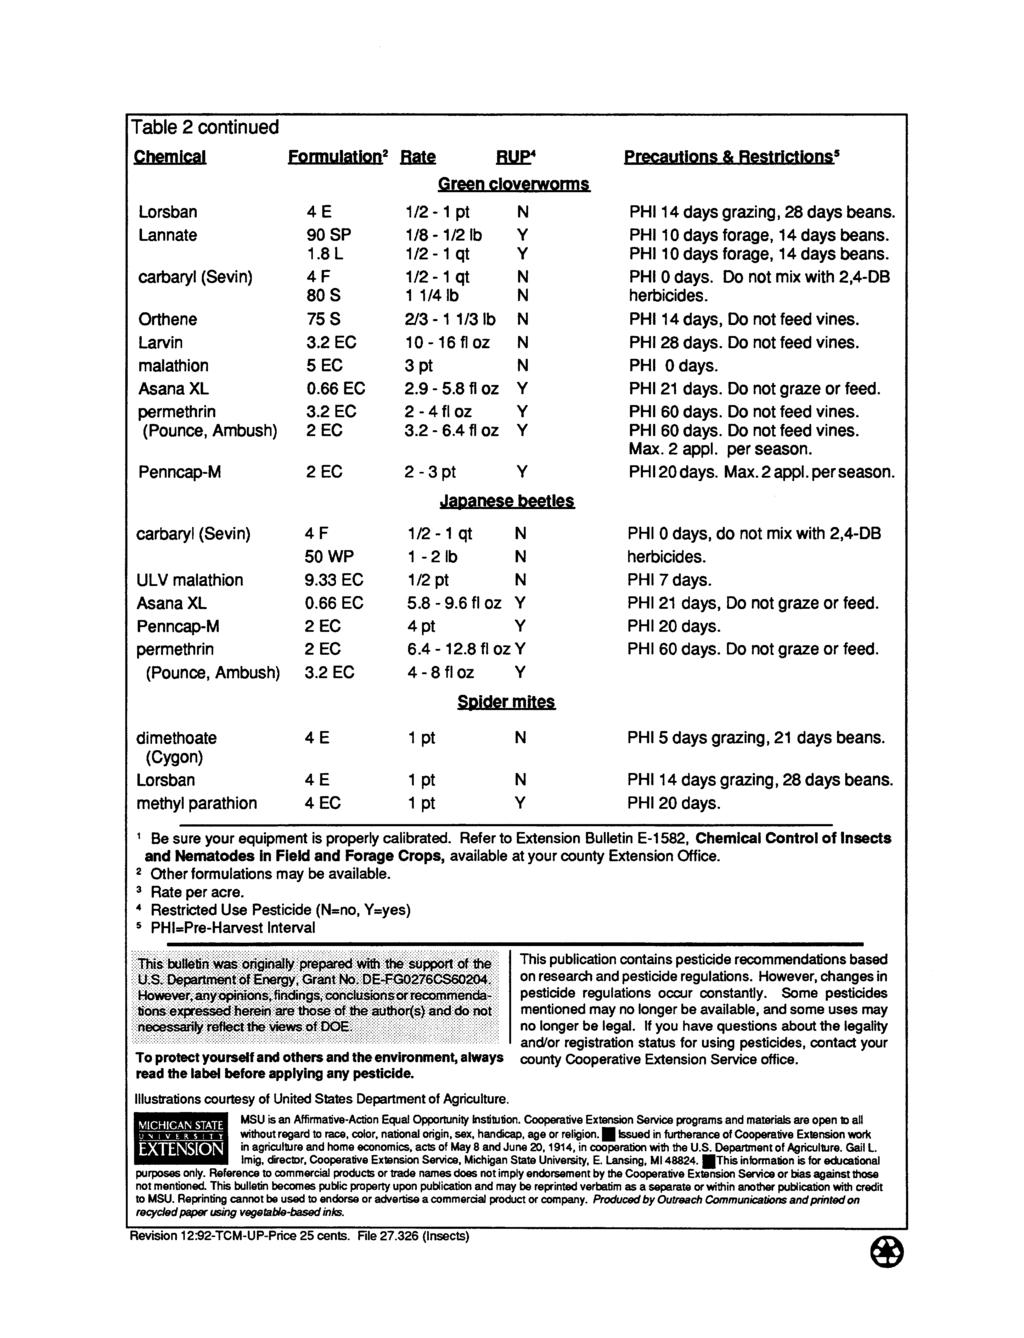 Table 2 continued Chemical Lannate Larvin malathion (Pounce, Ambush) Formulation 2 90 SP 1.8L 80S 3. 5 EC 3.